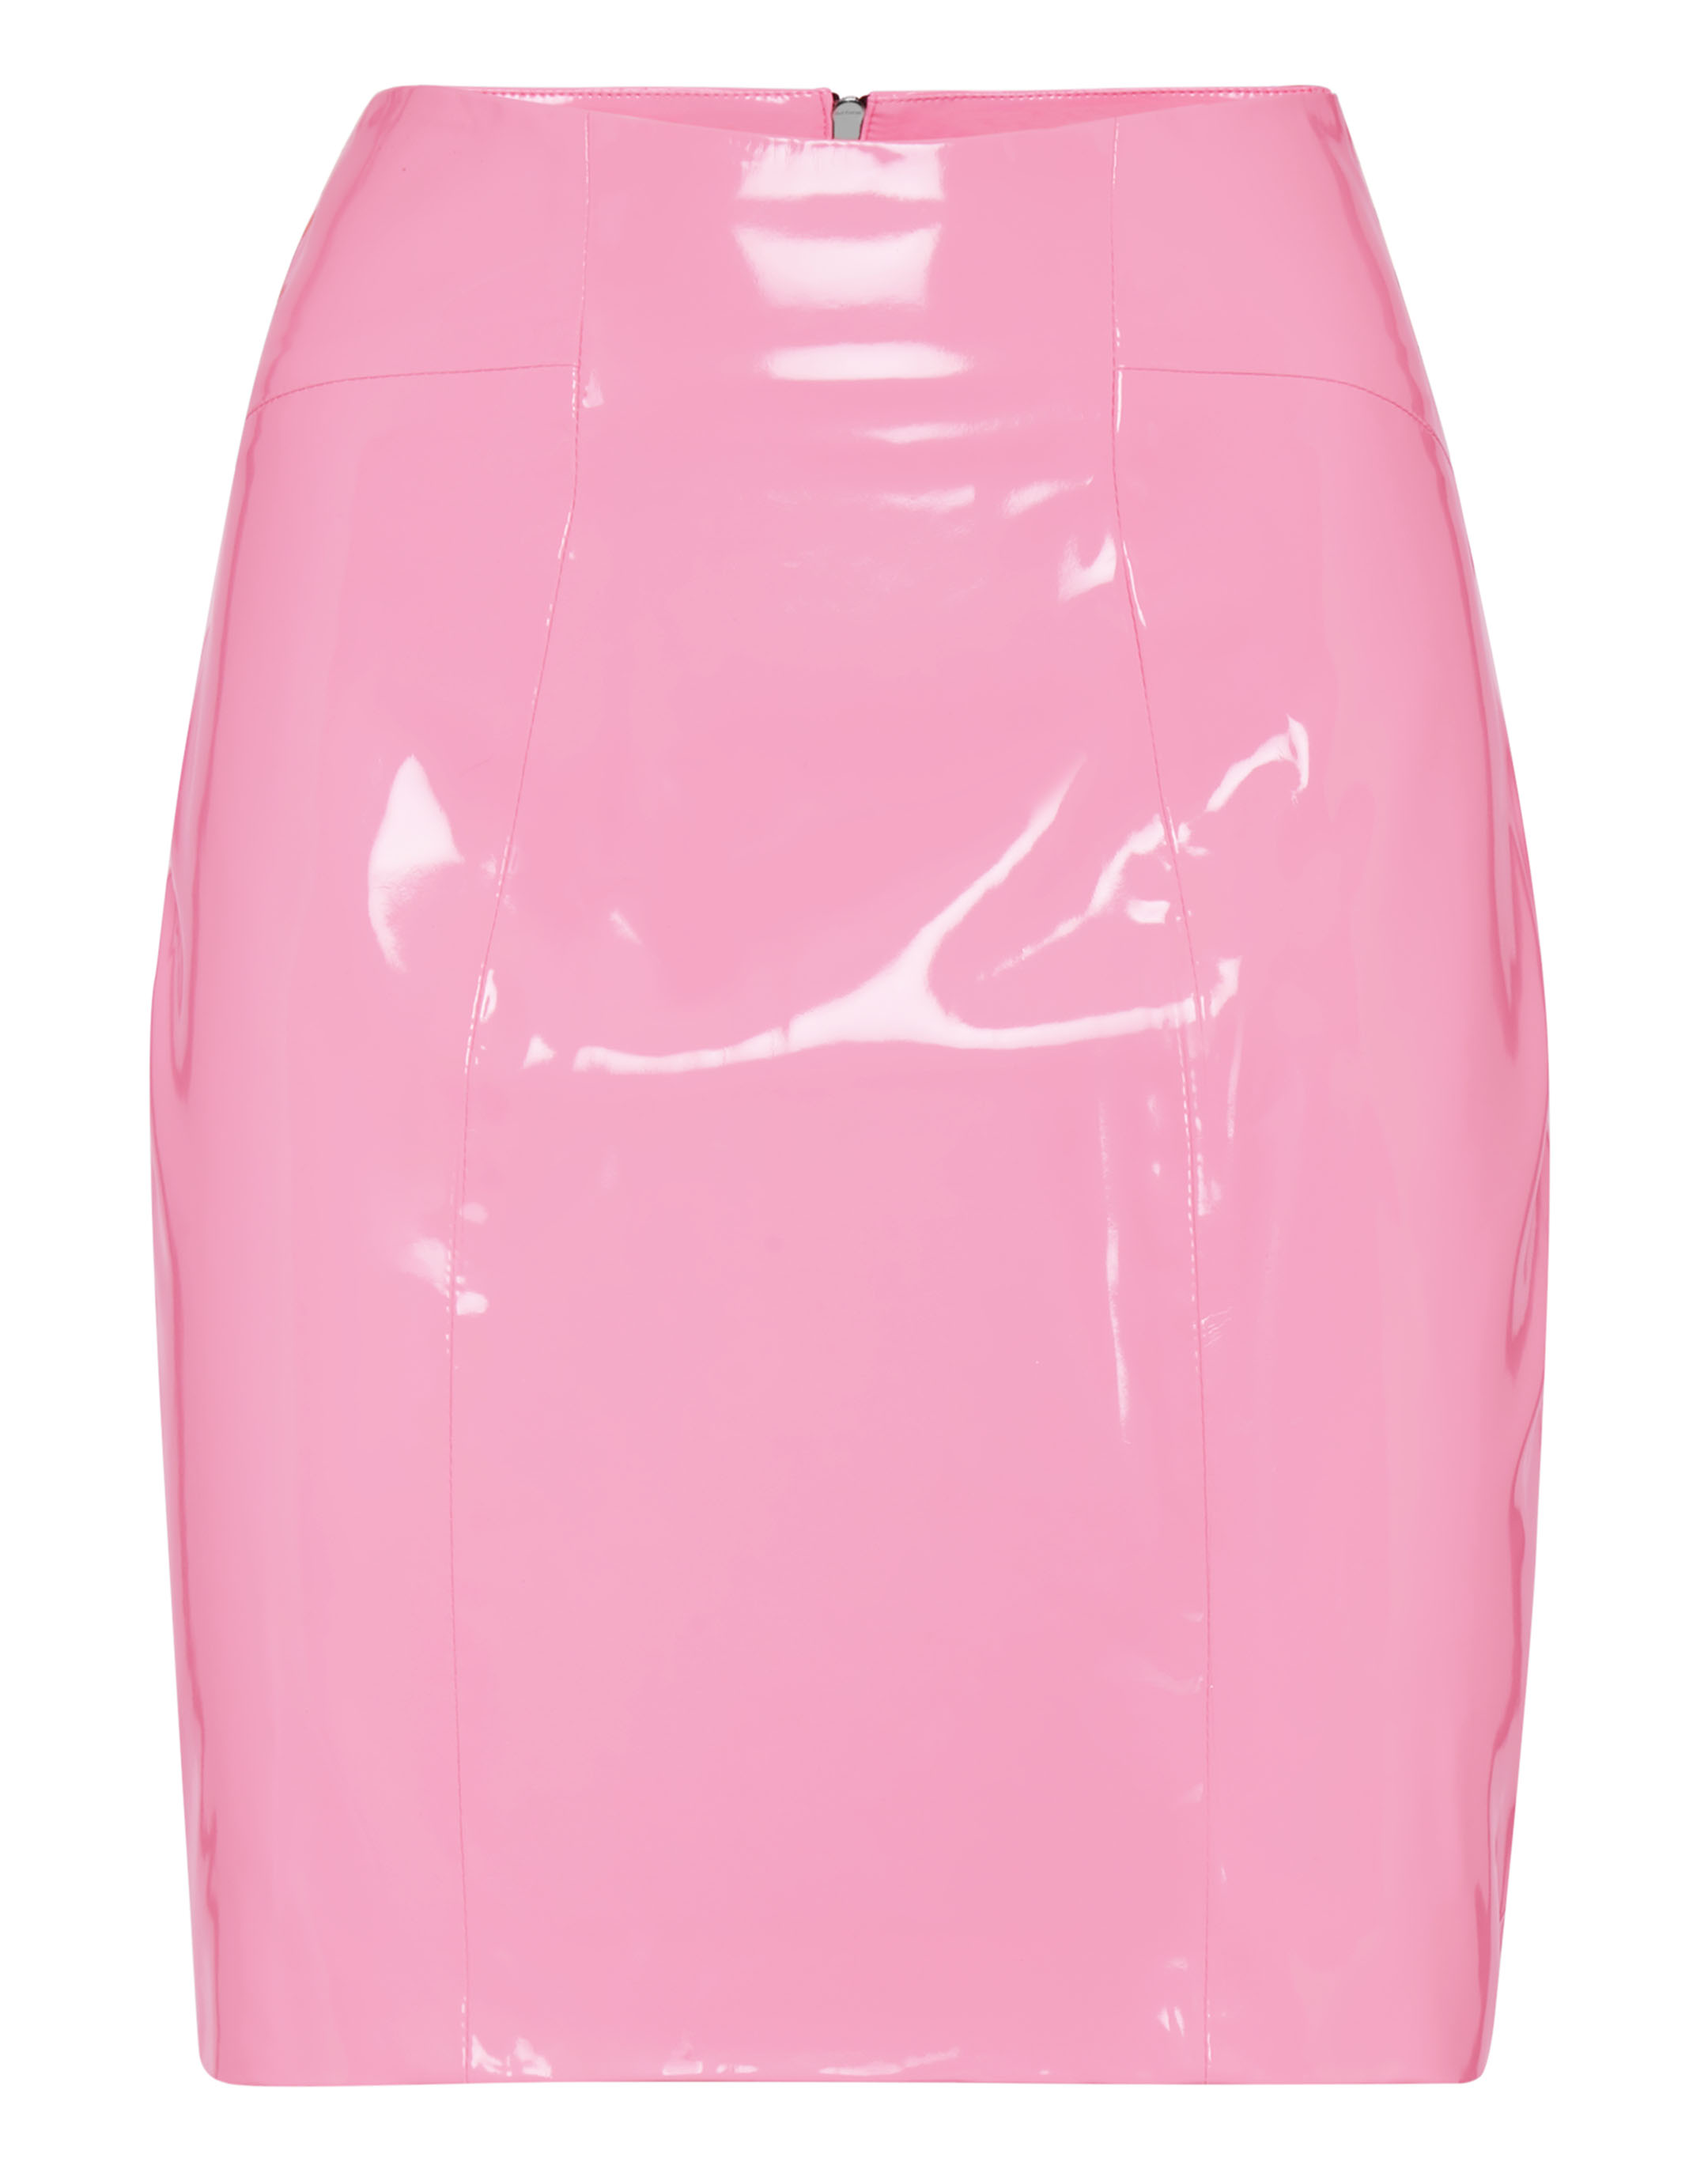 Pink Satin High Waisted Mini Skirt | Skirts | PrettyLittleThing-megaelearning.vn